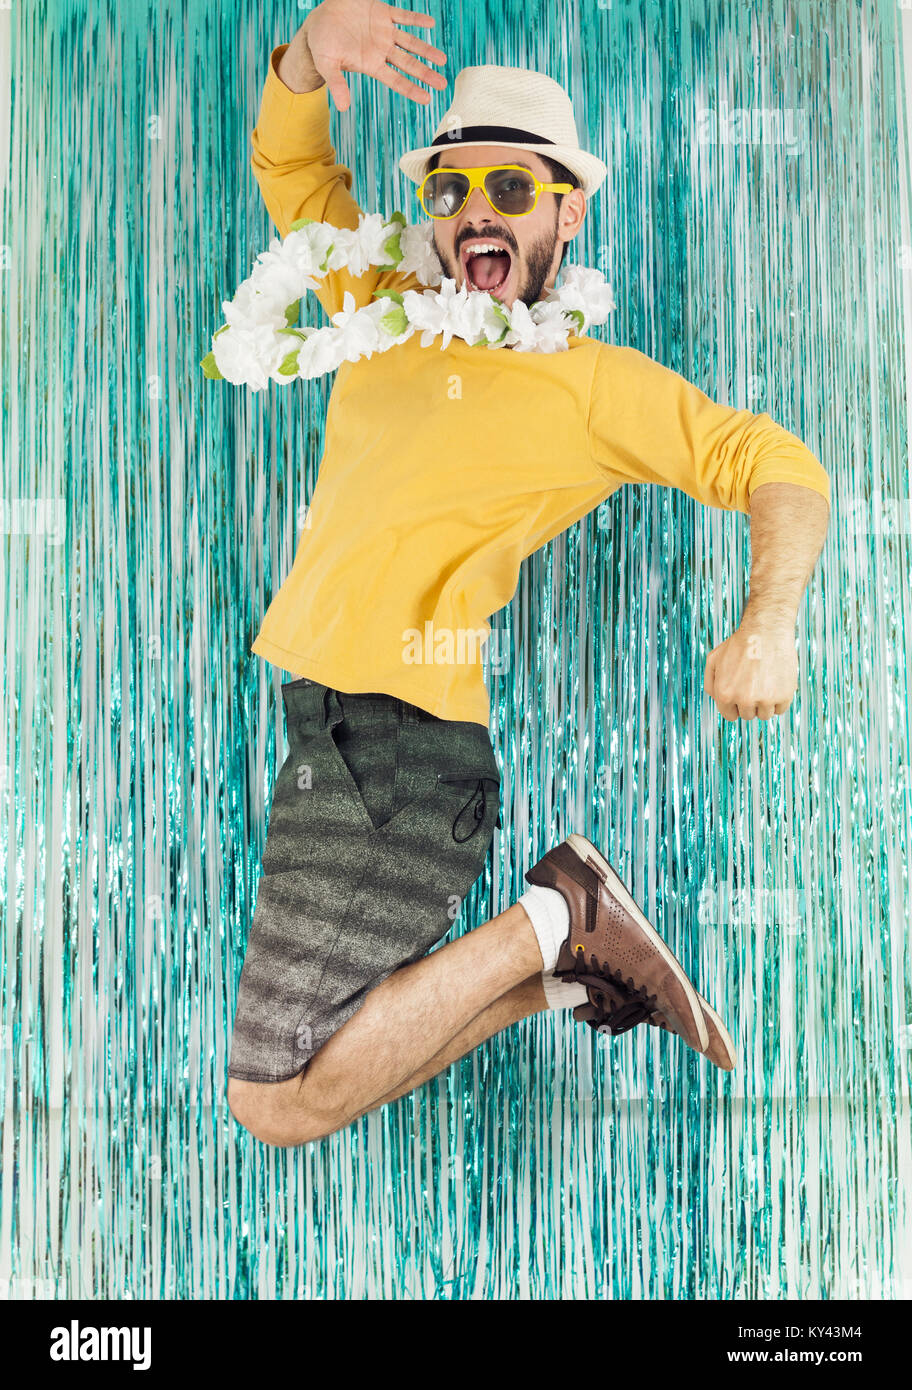 Homme barbu en vert et jaune vêtements, lunettes de soleil et collier  hawaïen. Le carnaval du Brésil, veille de la fin de l'année, de l'euphorie  et de plaisir. Coloré et lumineux Photo